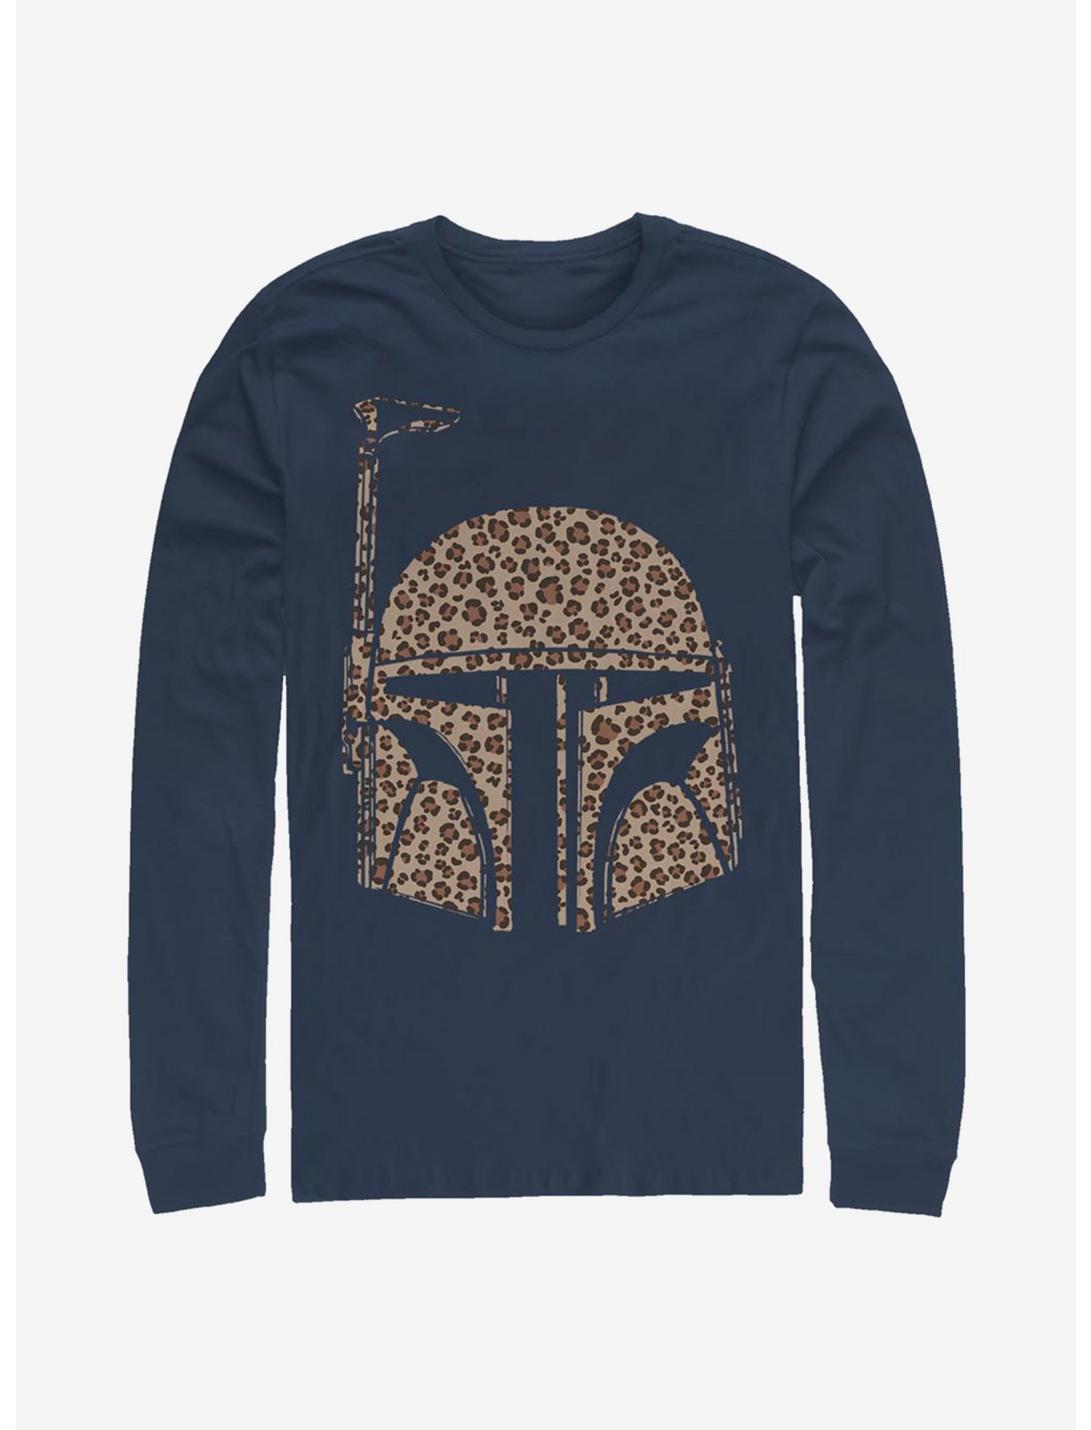 Star Wars Boba Cheetah Long-Sleeve T-Shirt, NAVY, hi-res